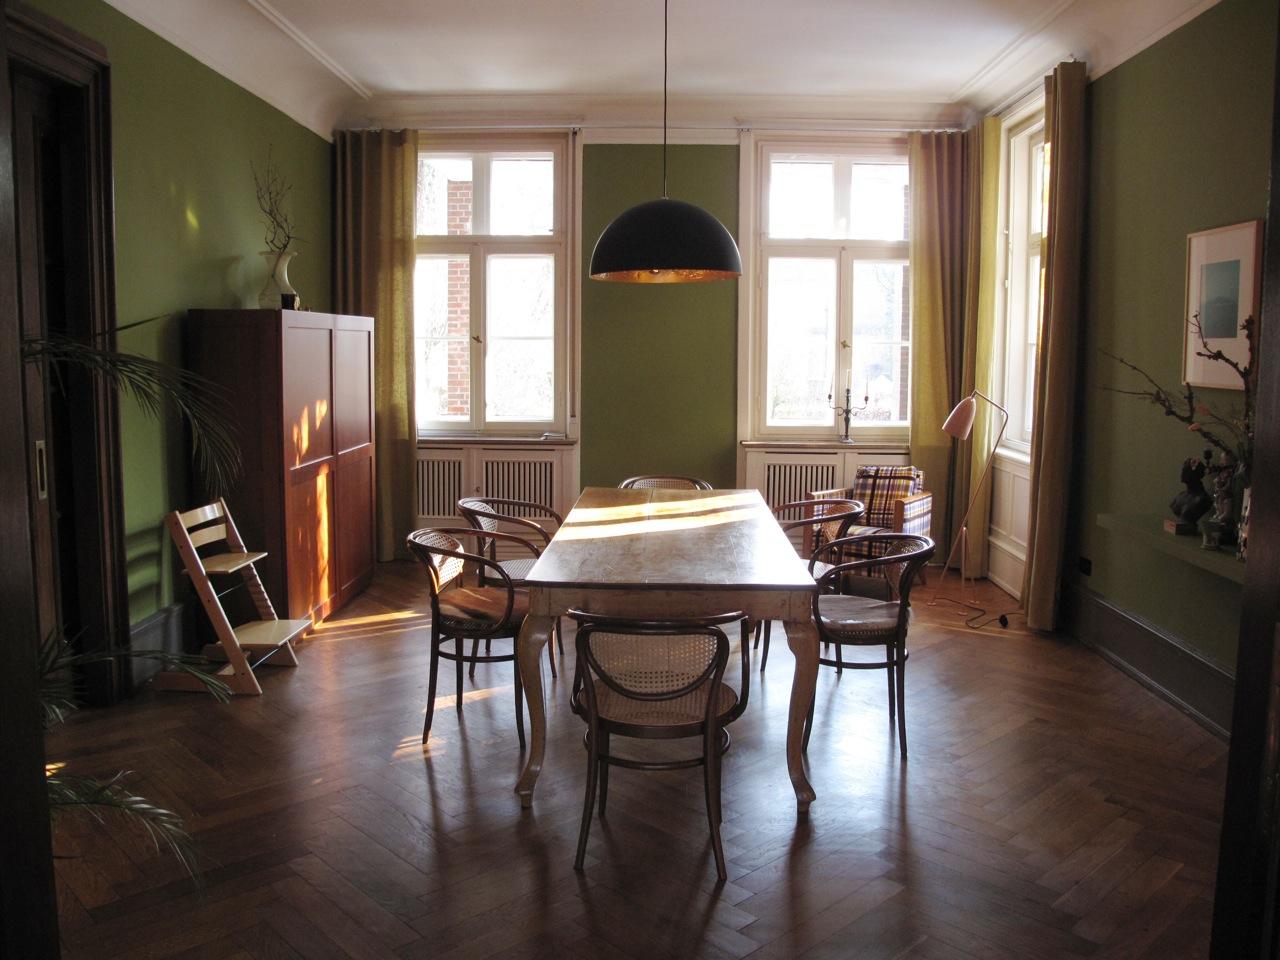 Holzmöbel im grün gestrichenen Wohnzimmer #holzmöbel #holztisch #hängeleuchte ©scout for location